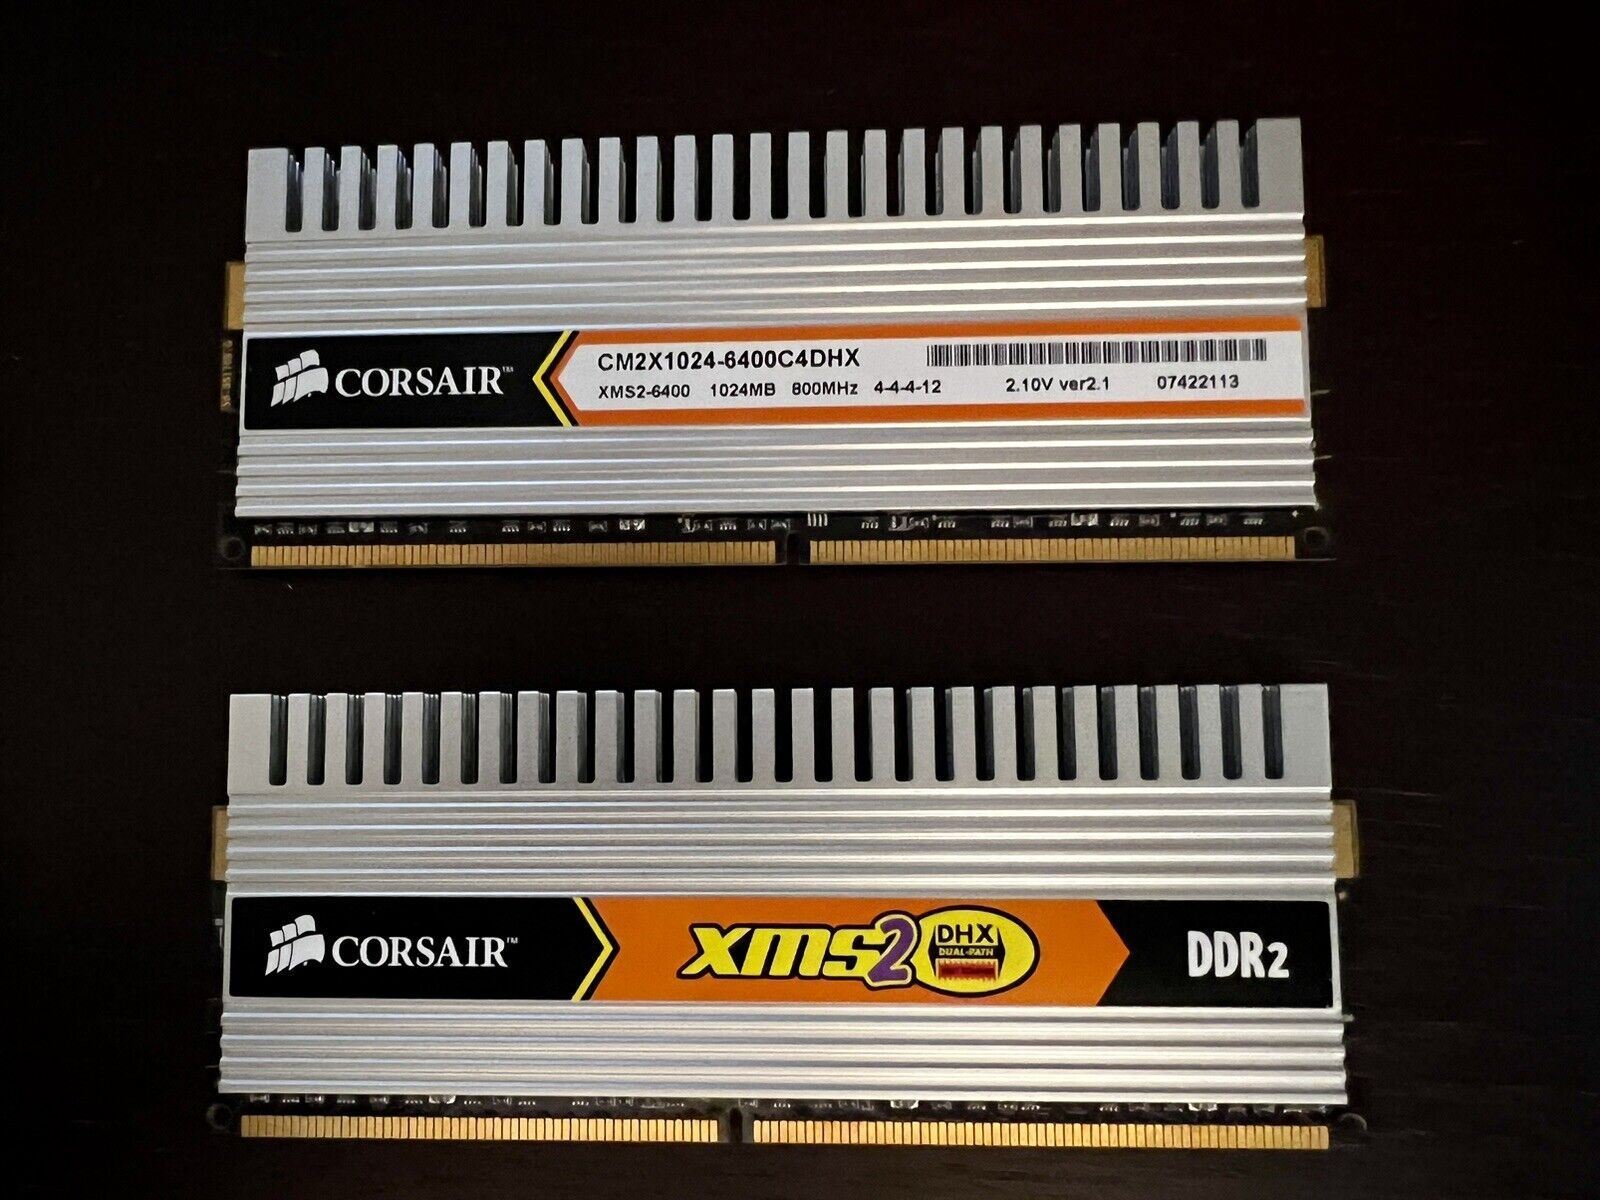 LOT OF 2 CORSAIR 2 X 1GB RAM DDR2 PC2-6400U 800MHz OK CM2X1024-6400C4DHX